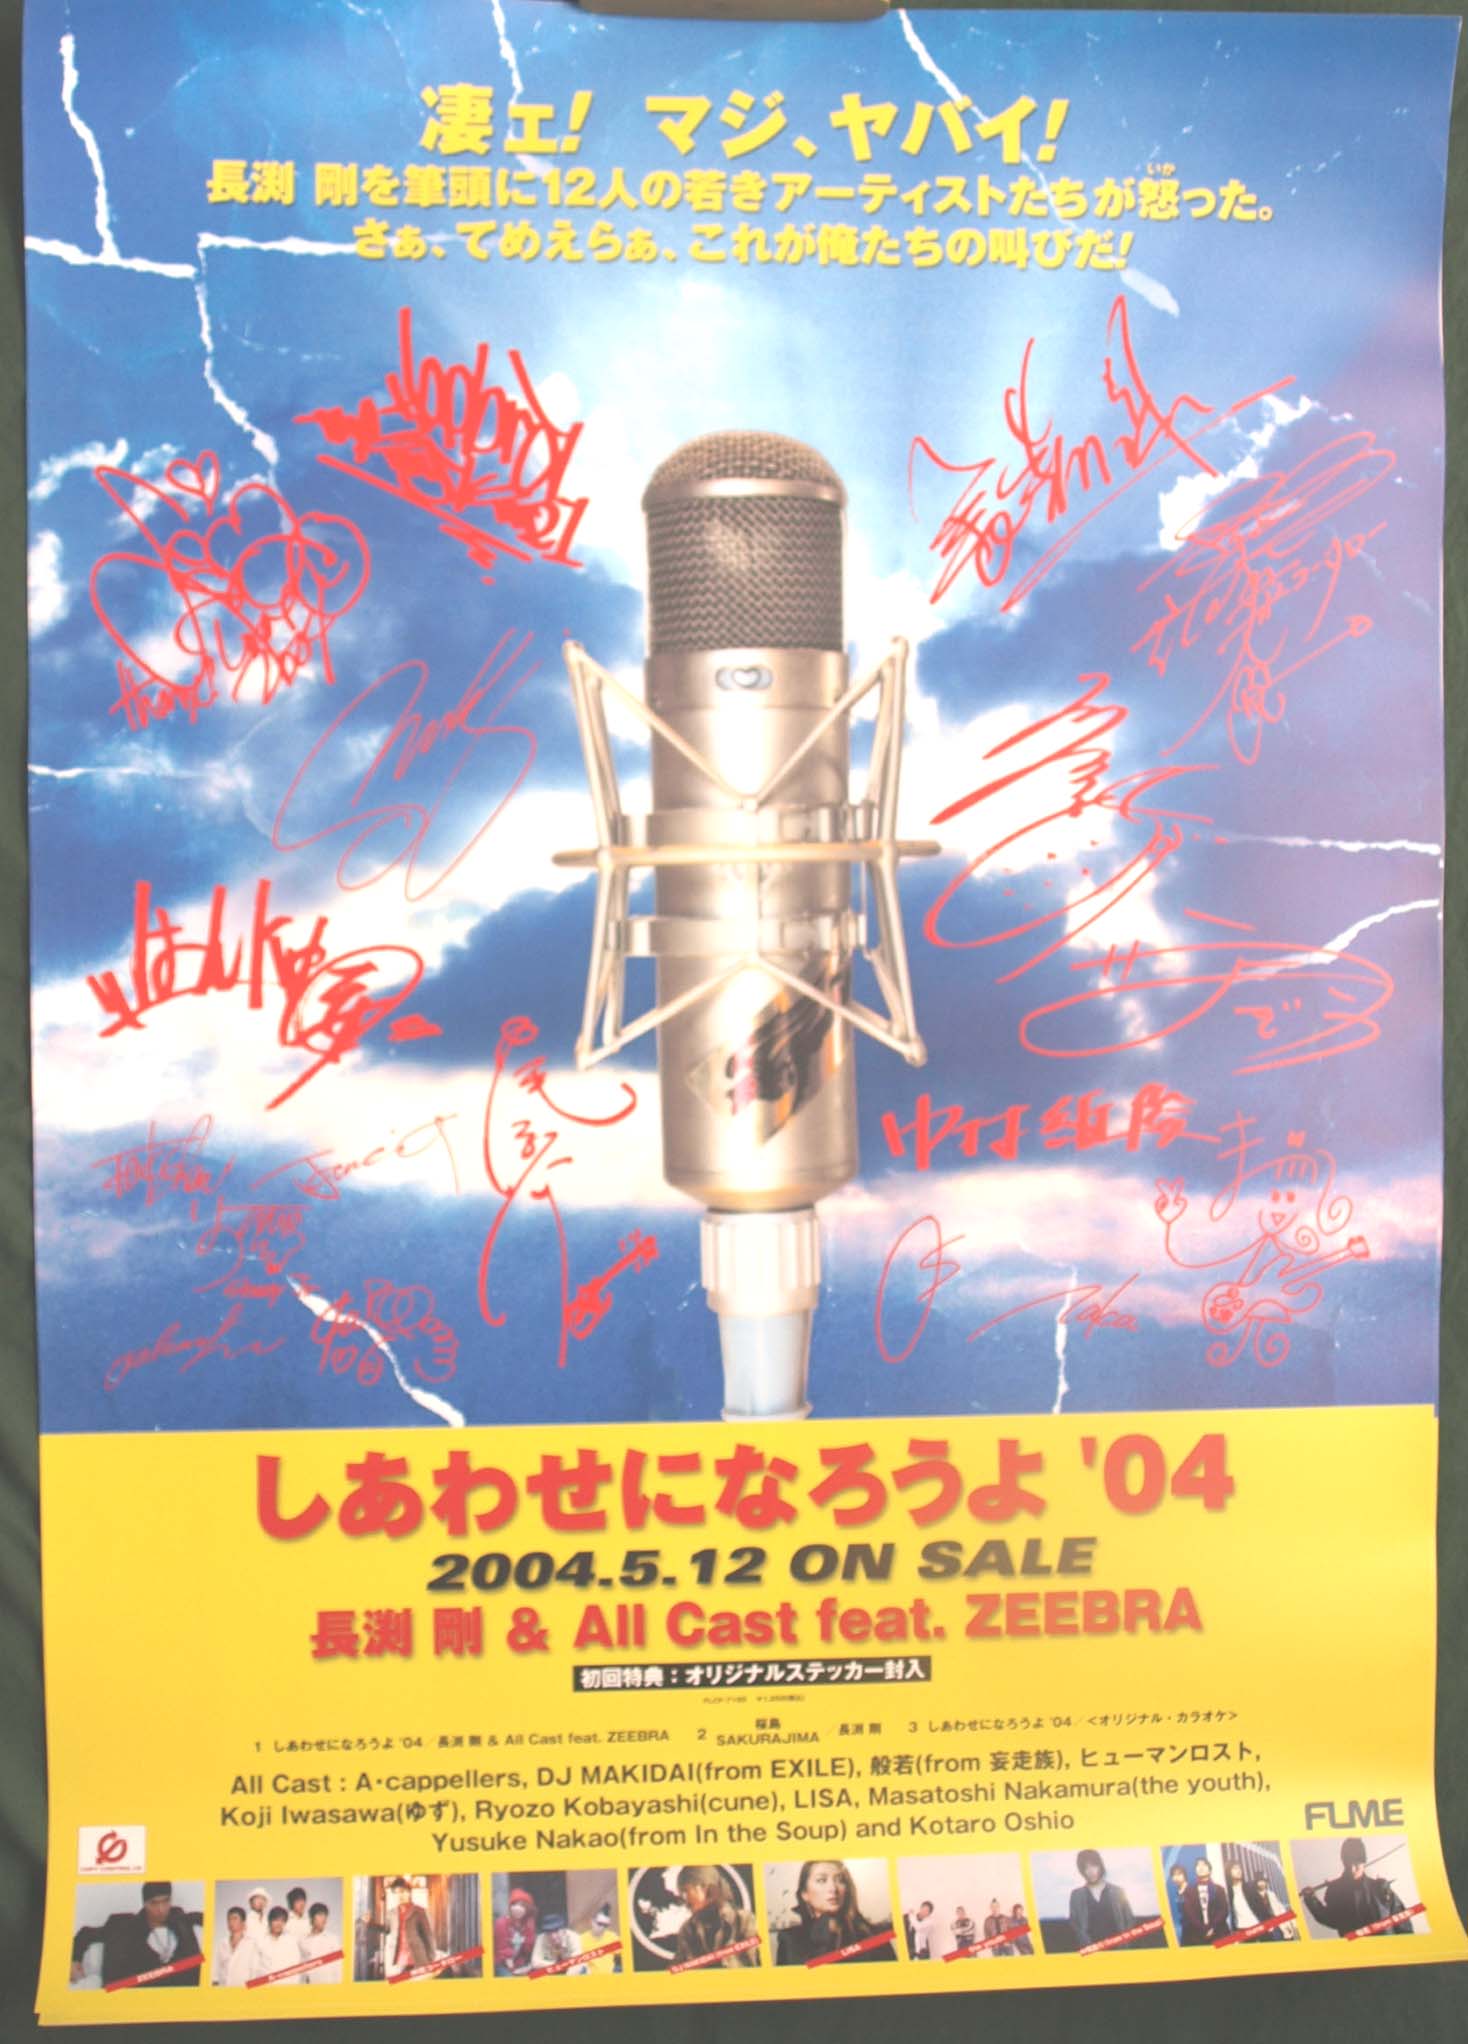 長渕剛 & All Cast feat.ZEEBRA 「しあわせになろうよ'04」のポスター